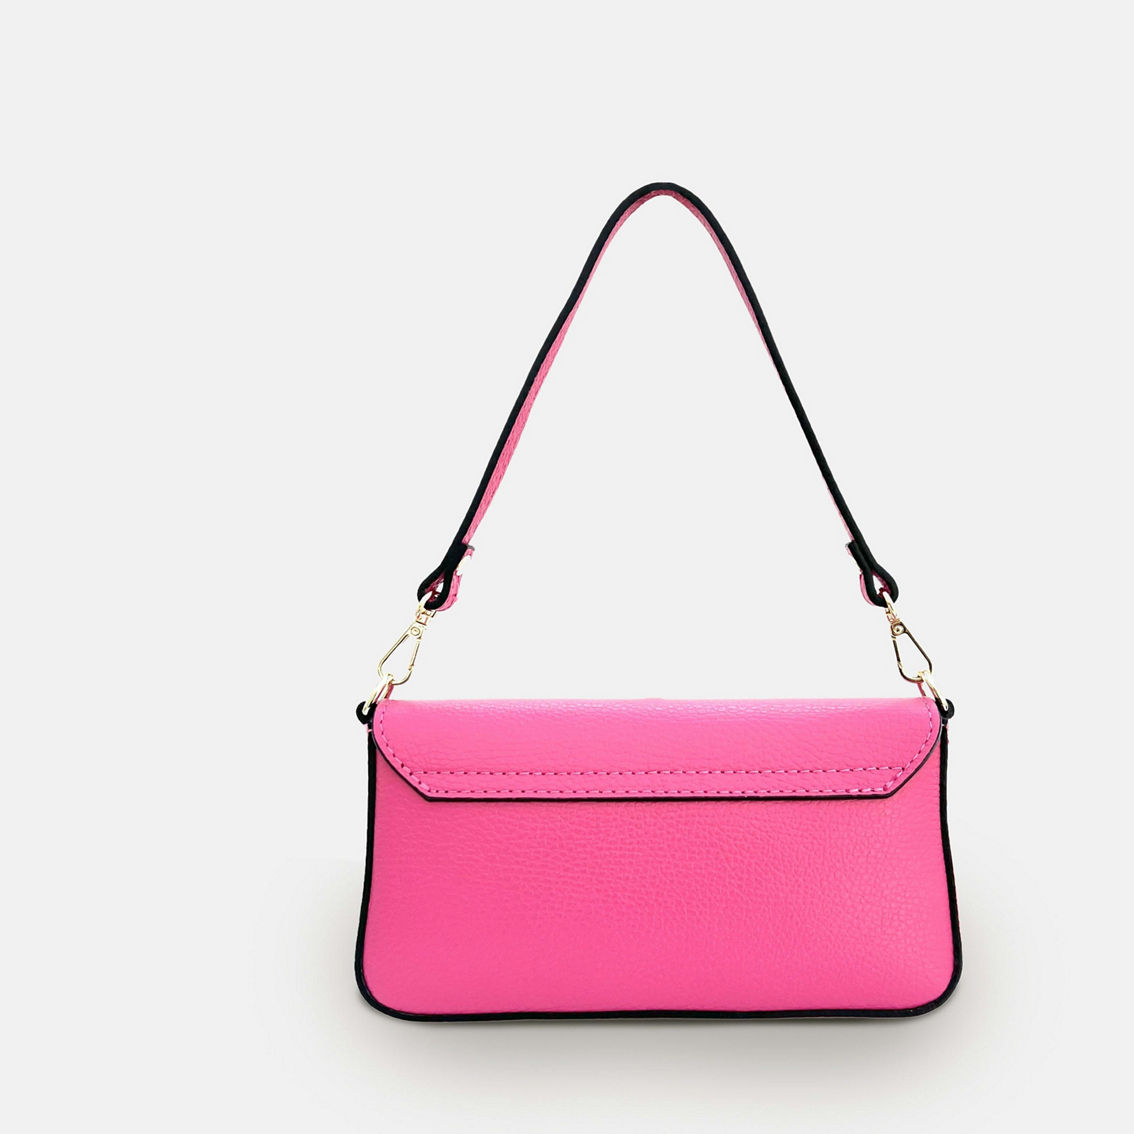 The Munro Barbie Pink Leather Shoulder Bag - Image 2 of 5